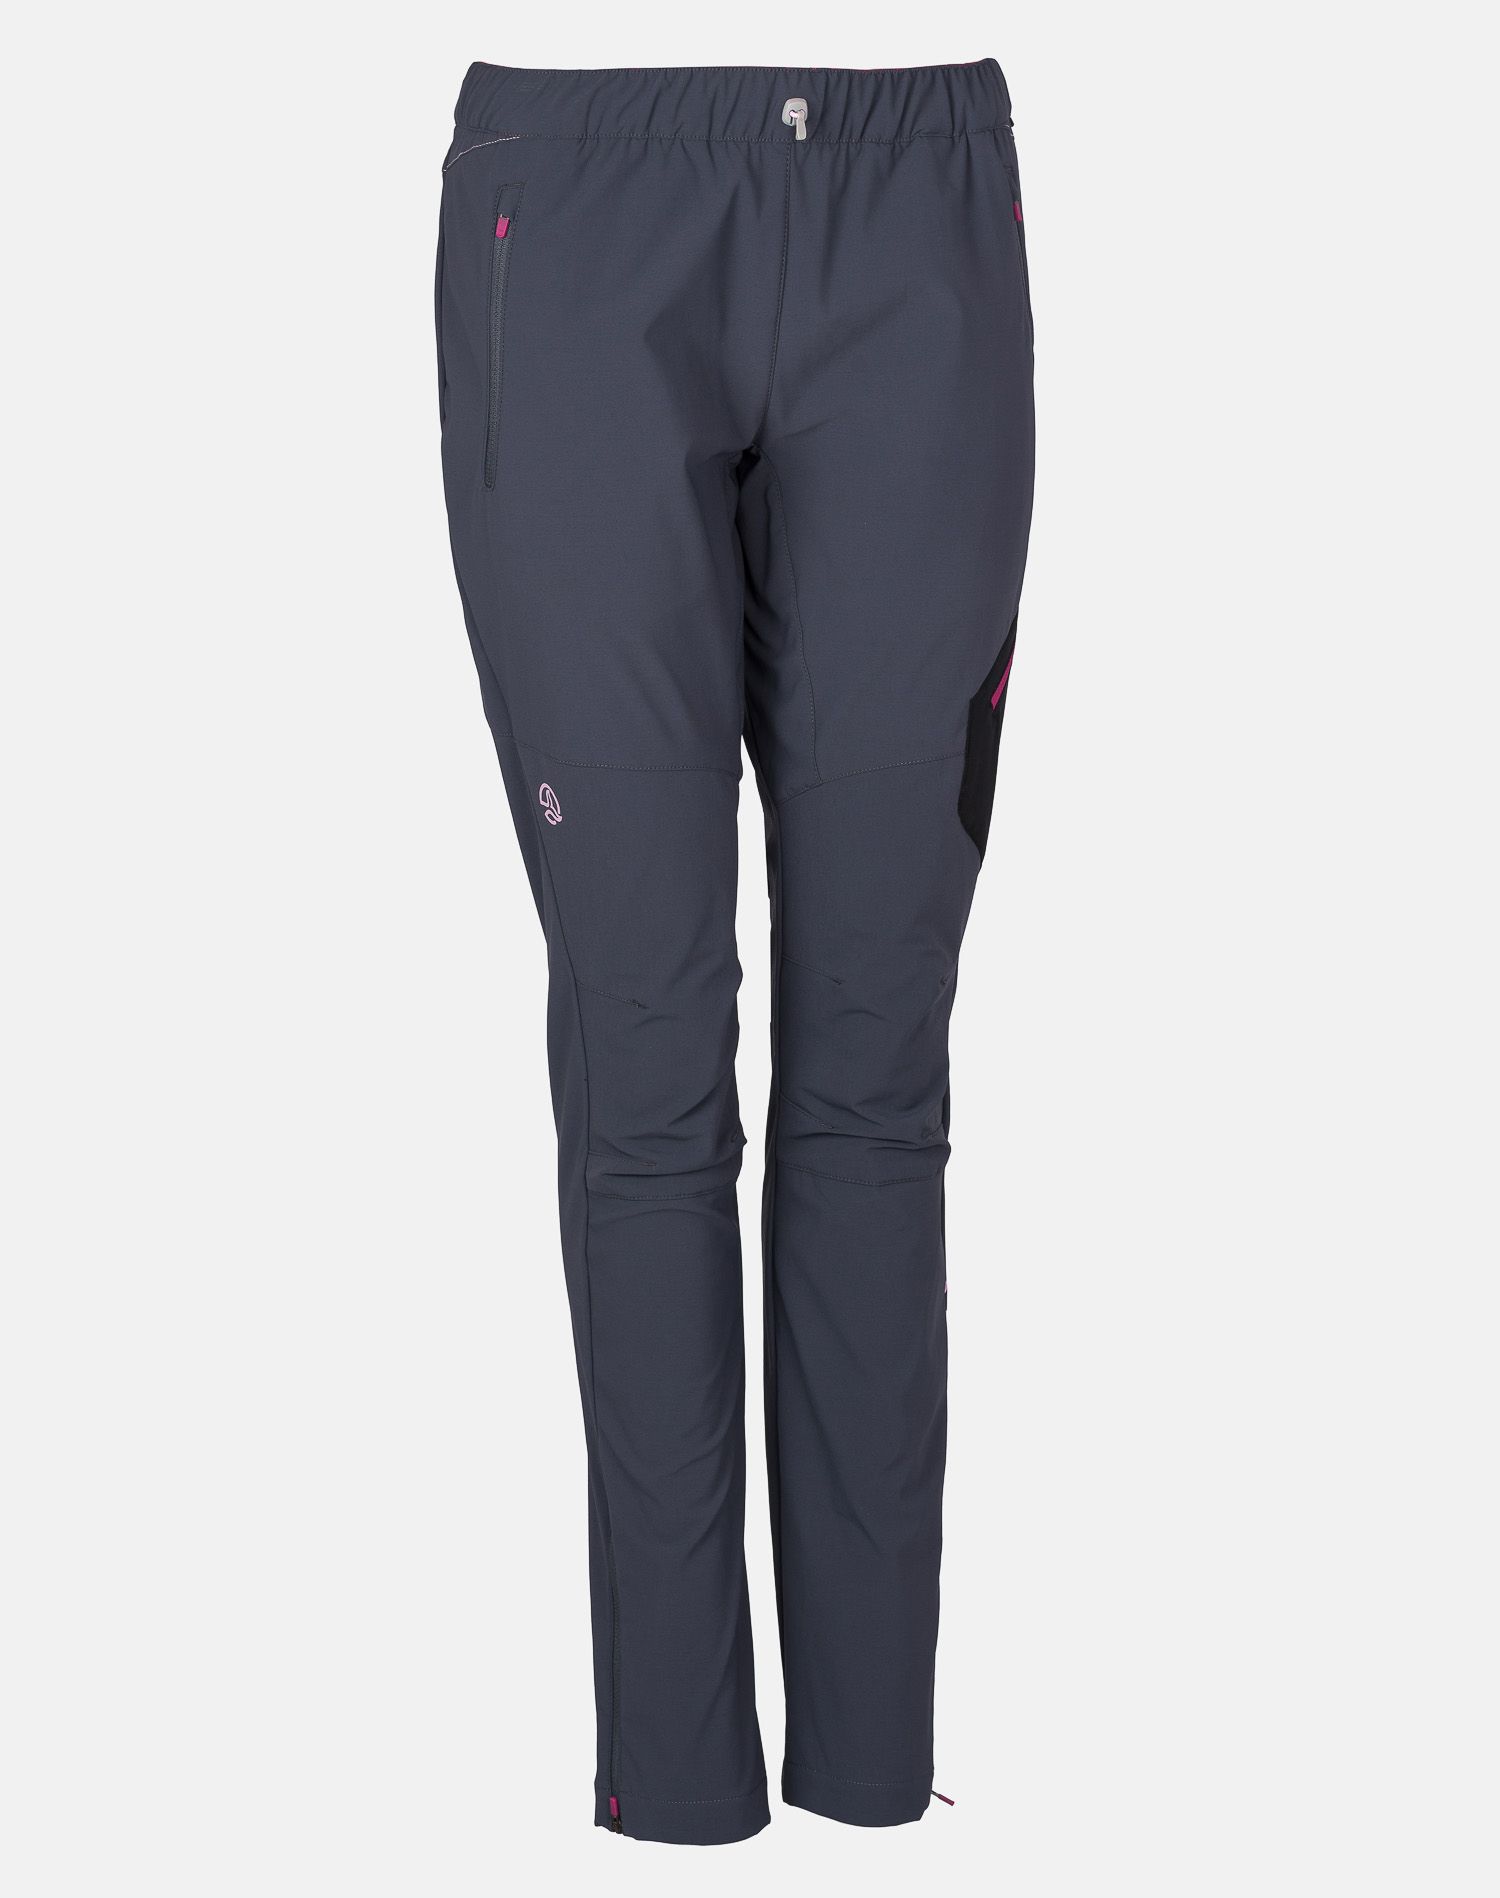 фото Спортивные брюки женские ternua kusofit pt w серые xs